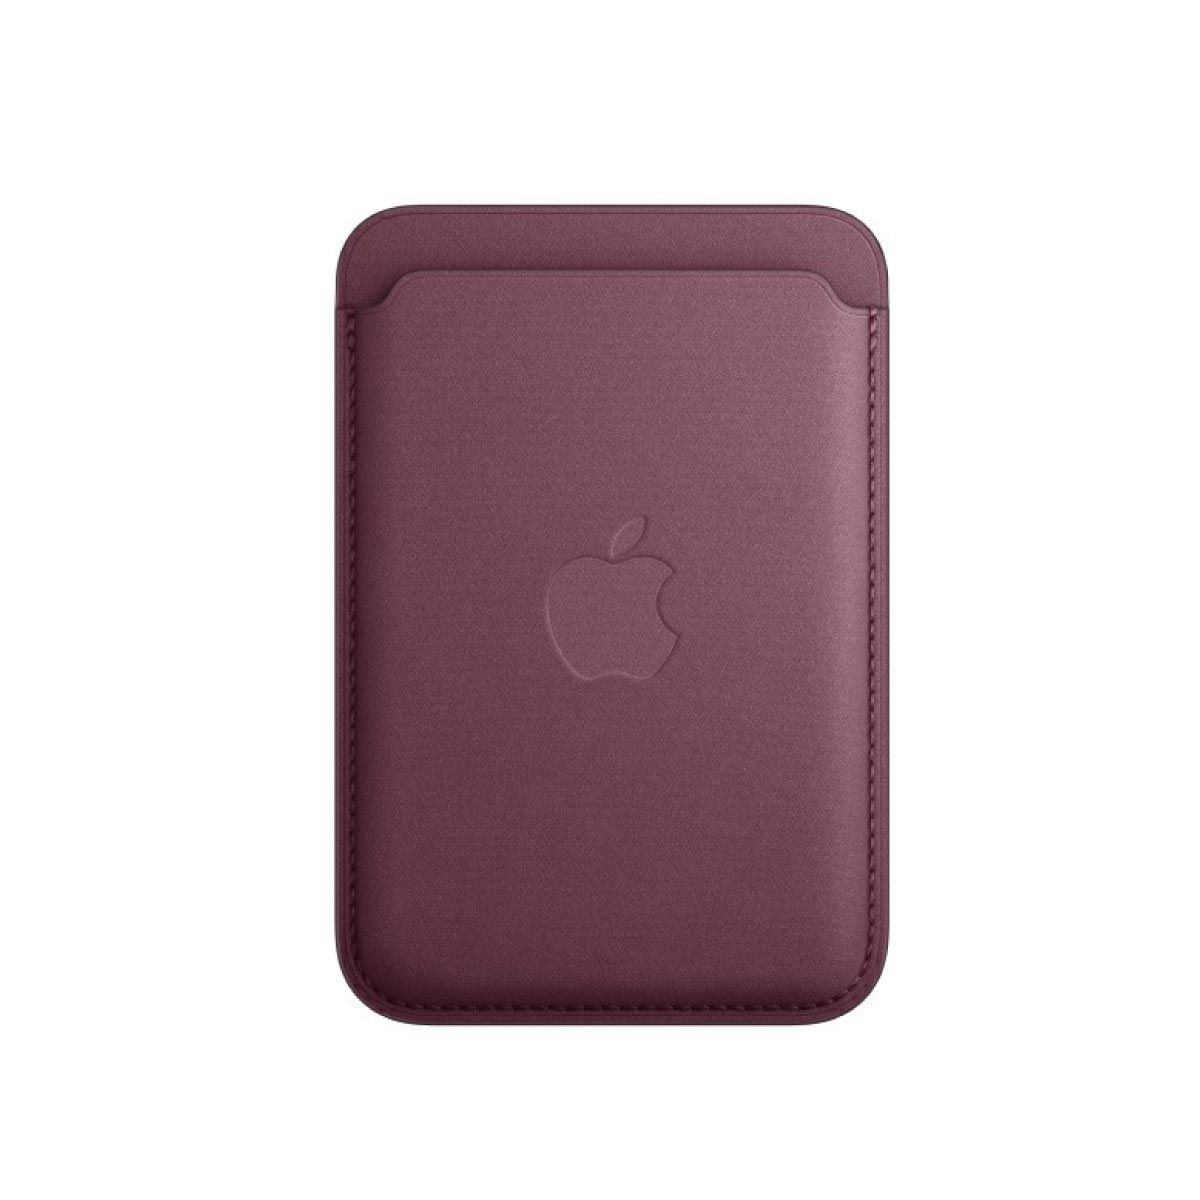 Apple Case เคสผ้า FineWoven แบบกระเป๋าสตางค์สำหรับ iPhone พร้อม MagSafe  -สีม่วงเข้มมัลเบอร์รี่